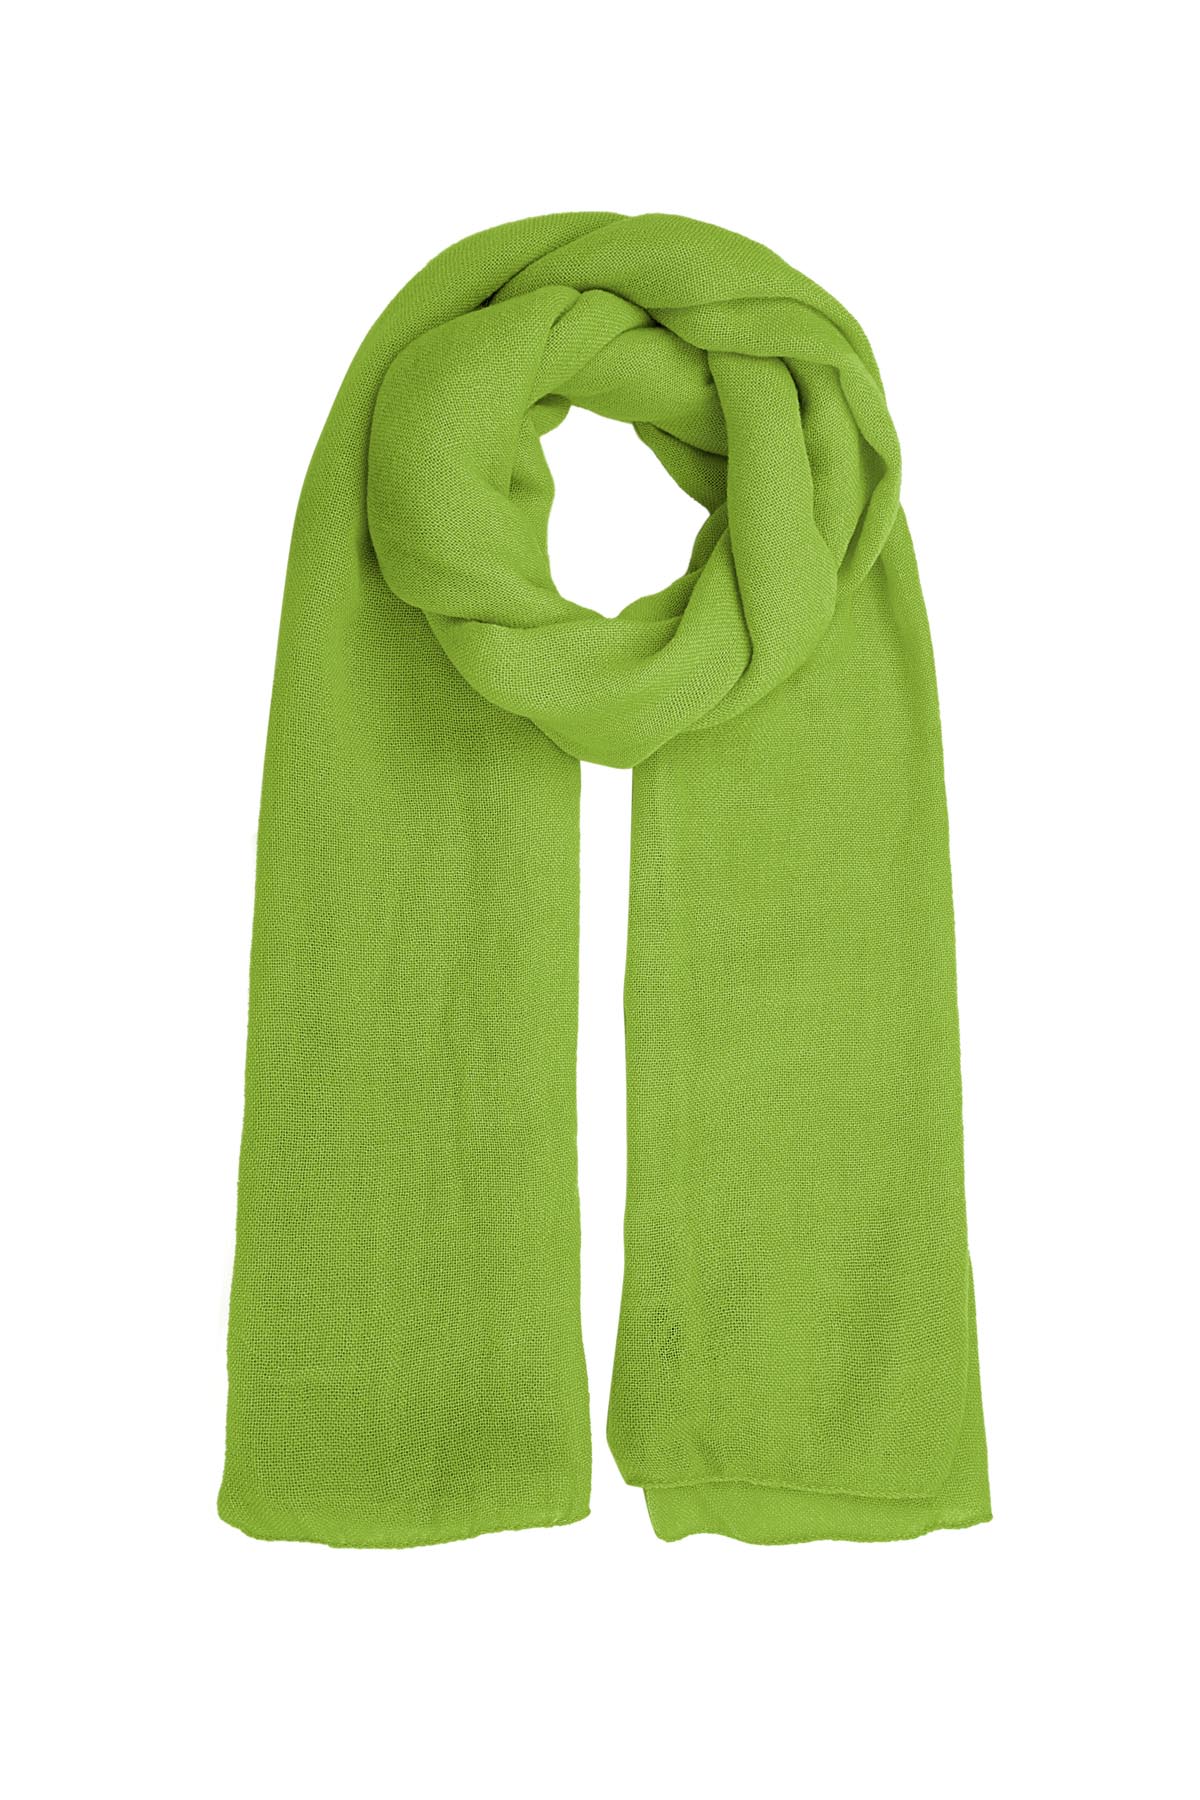 Sjaal effen kleur - piek groen